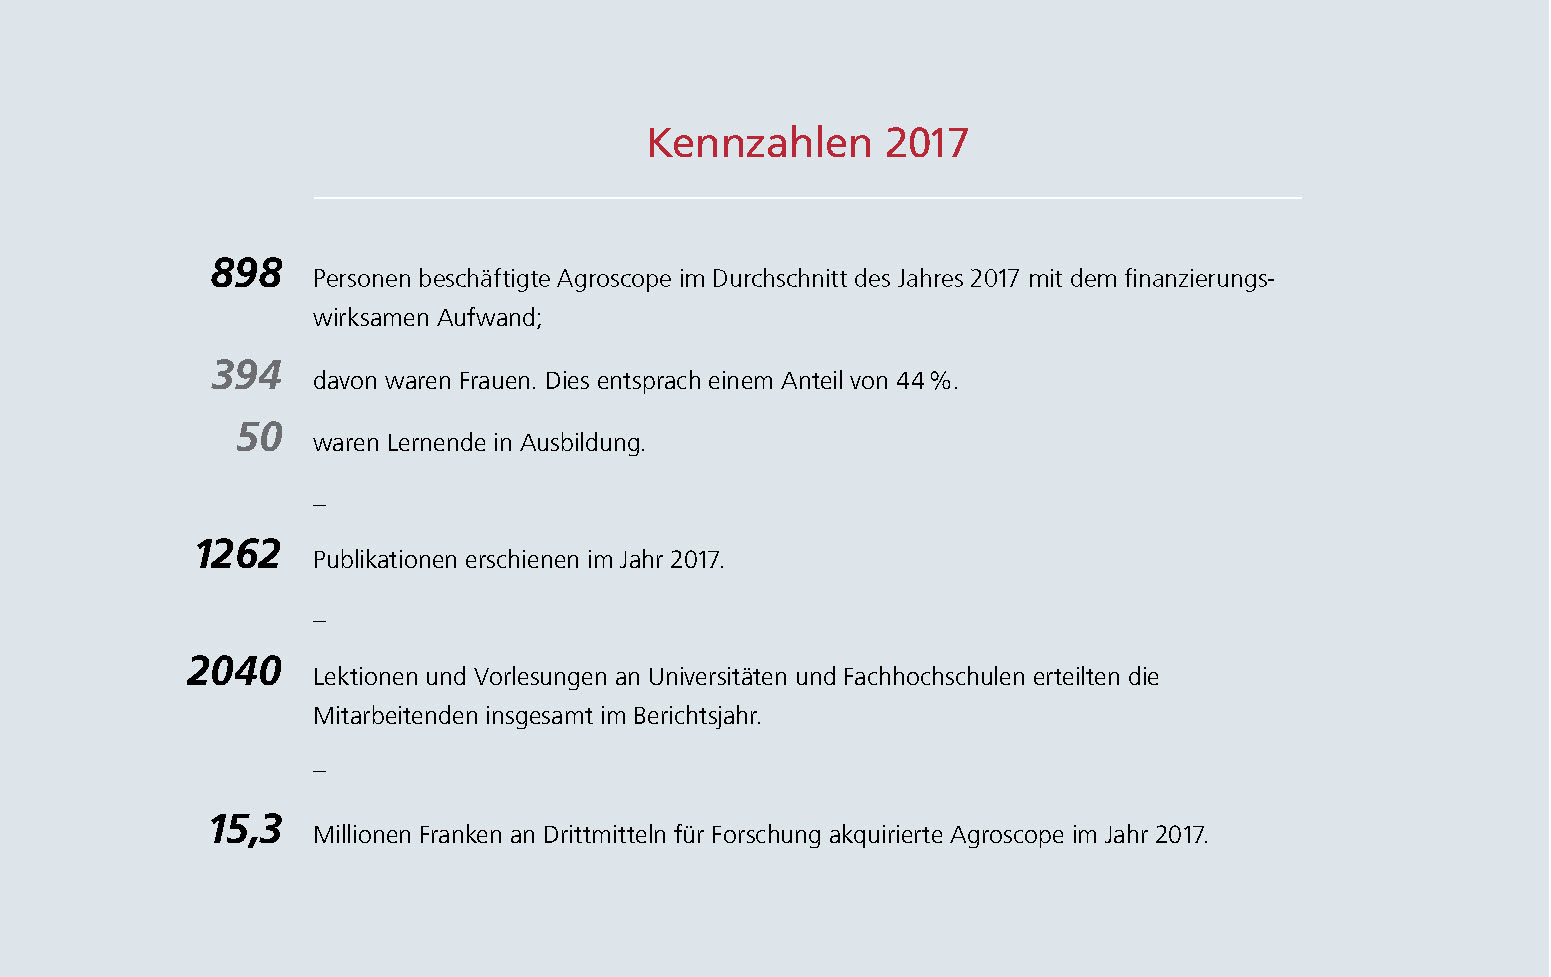 Kennzahlen2017_de